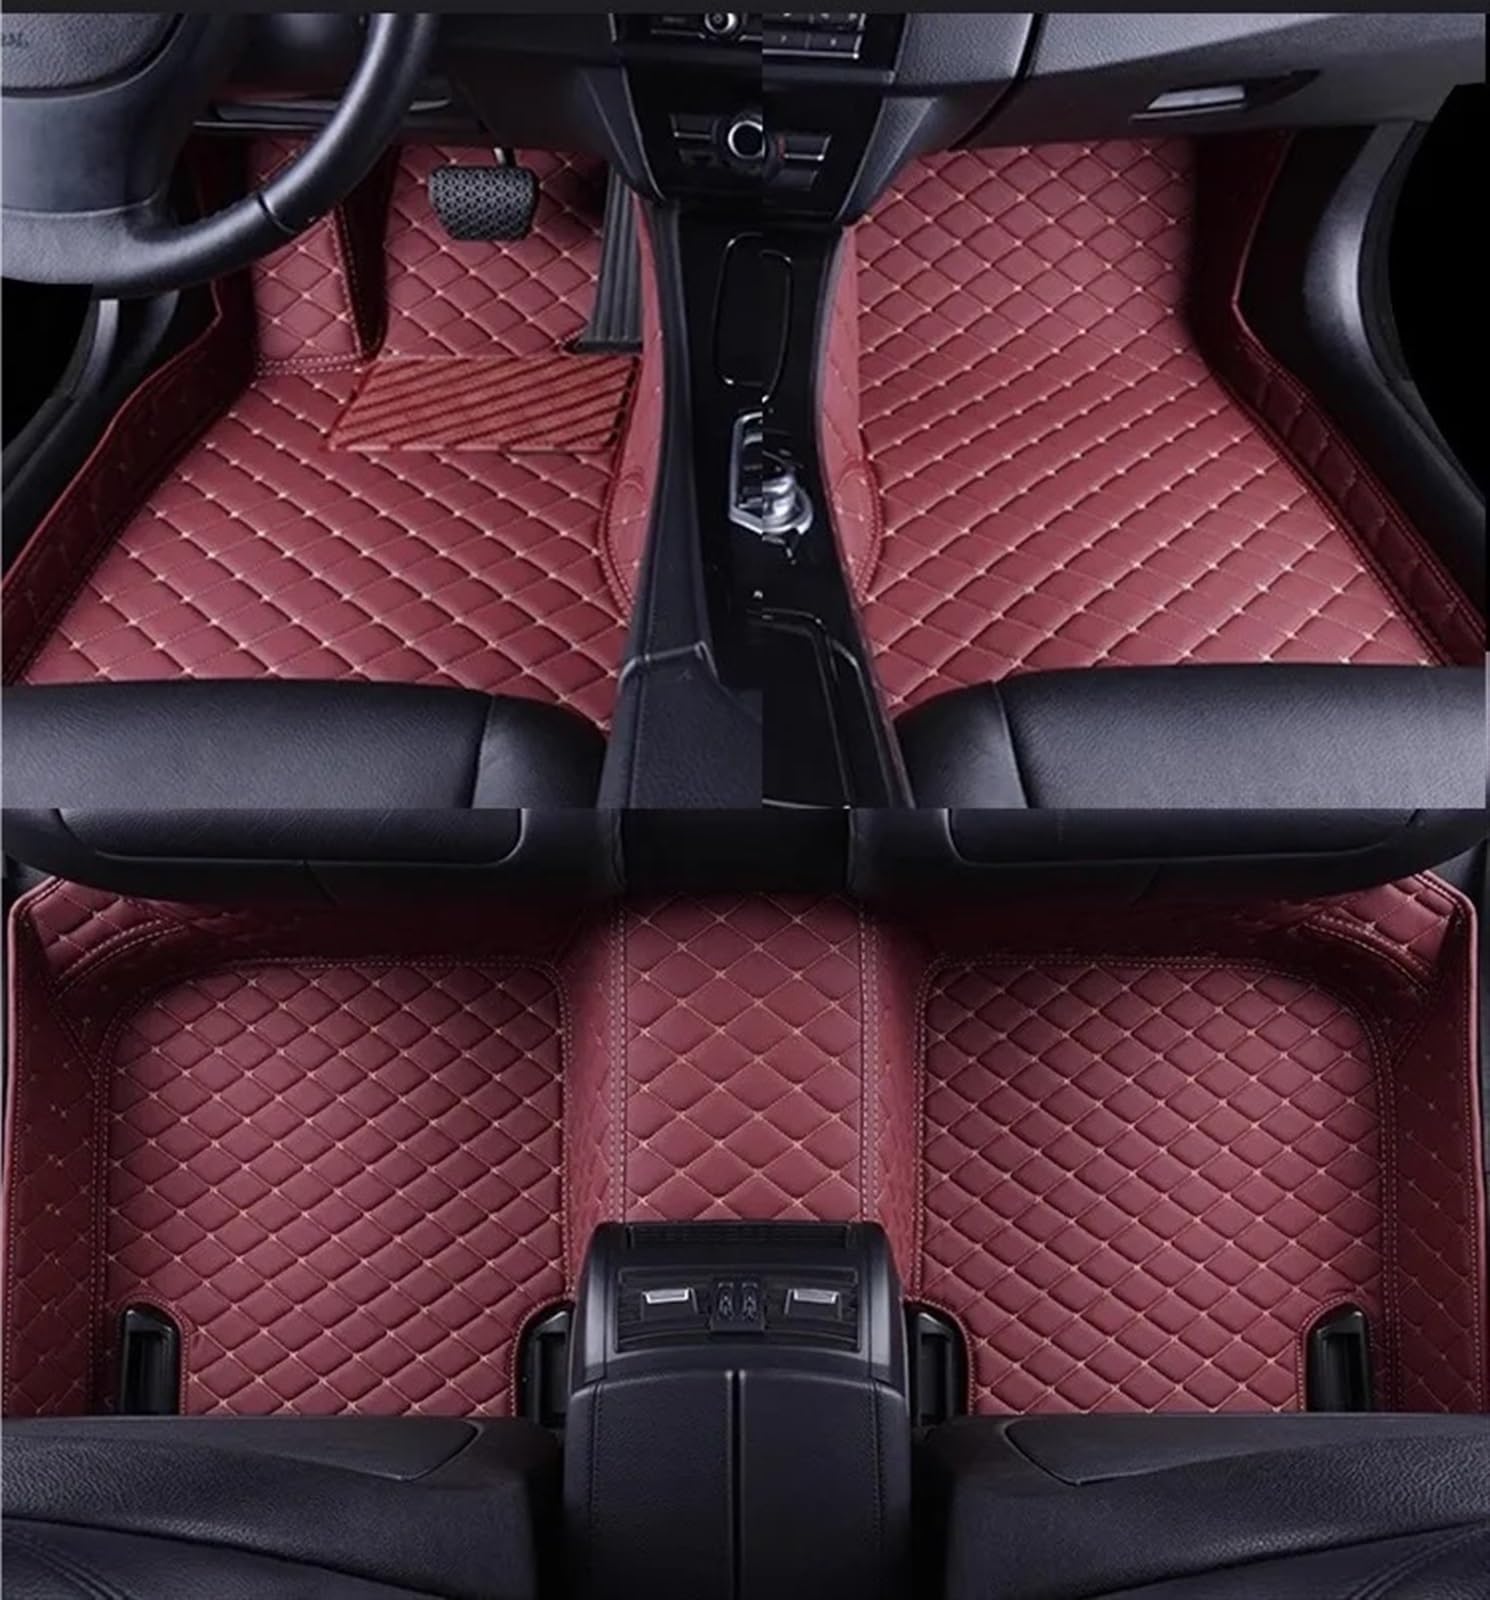 Auto Fußmatten Set Kompatibel mit Kia Für Sorento 5 Seat 2013 2014 Benutzerdefinierte 3D-Auto-Fußmatten PU-Innenausstattung(Wine Red 5 Seat) von ZHjLut